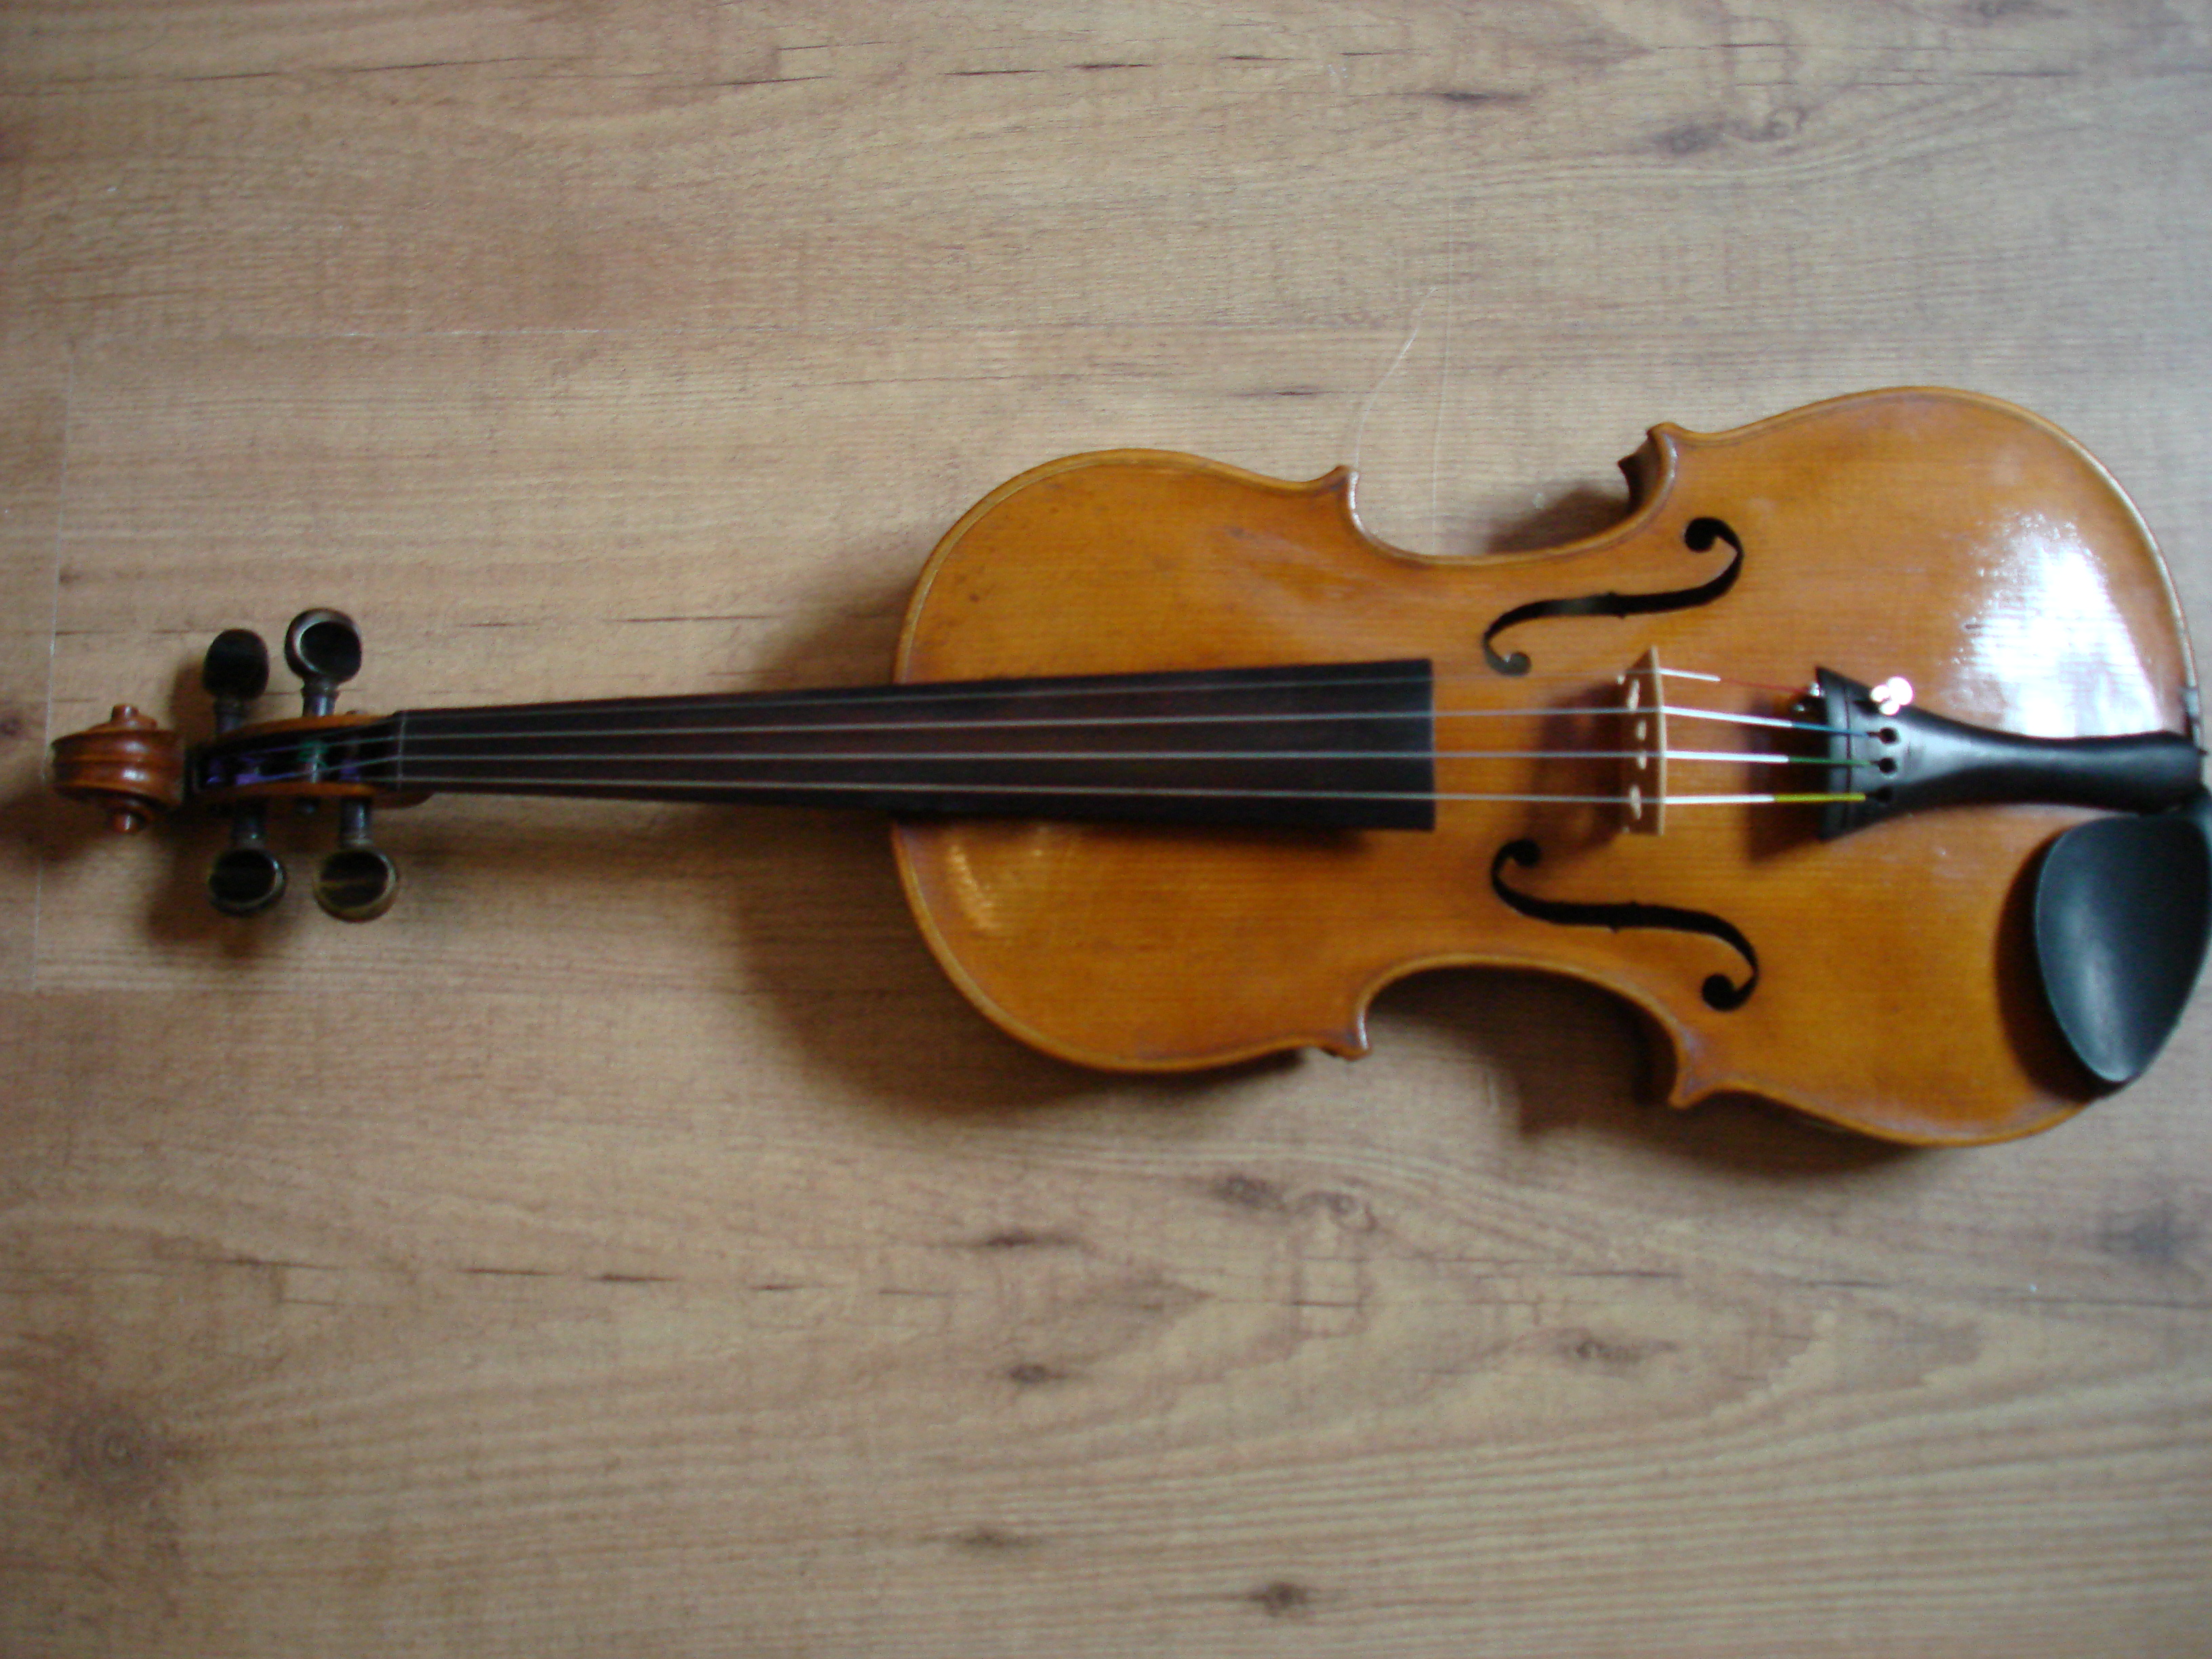 Saksische viool €1.200,-
Taxatierapport aanwezig